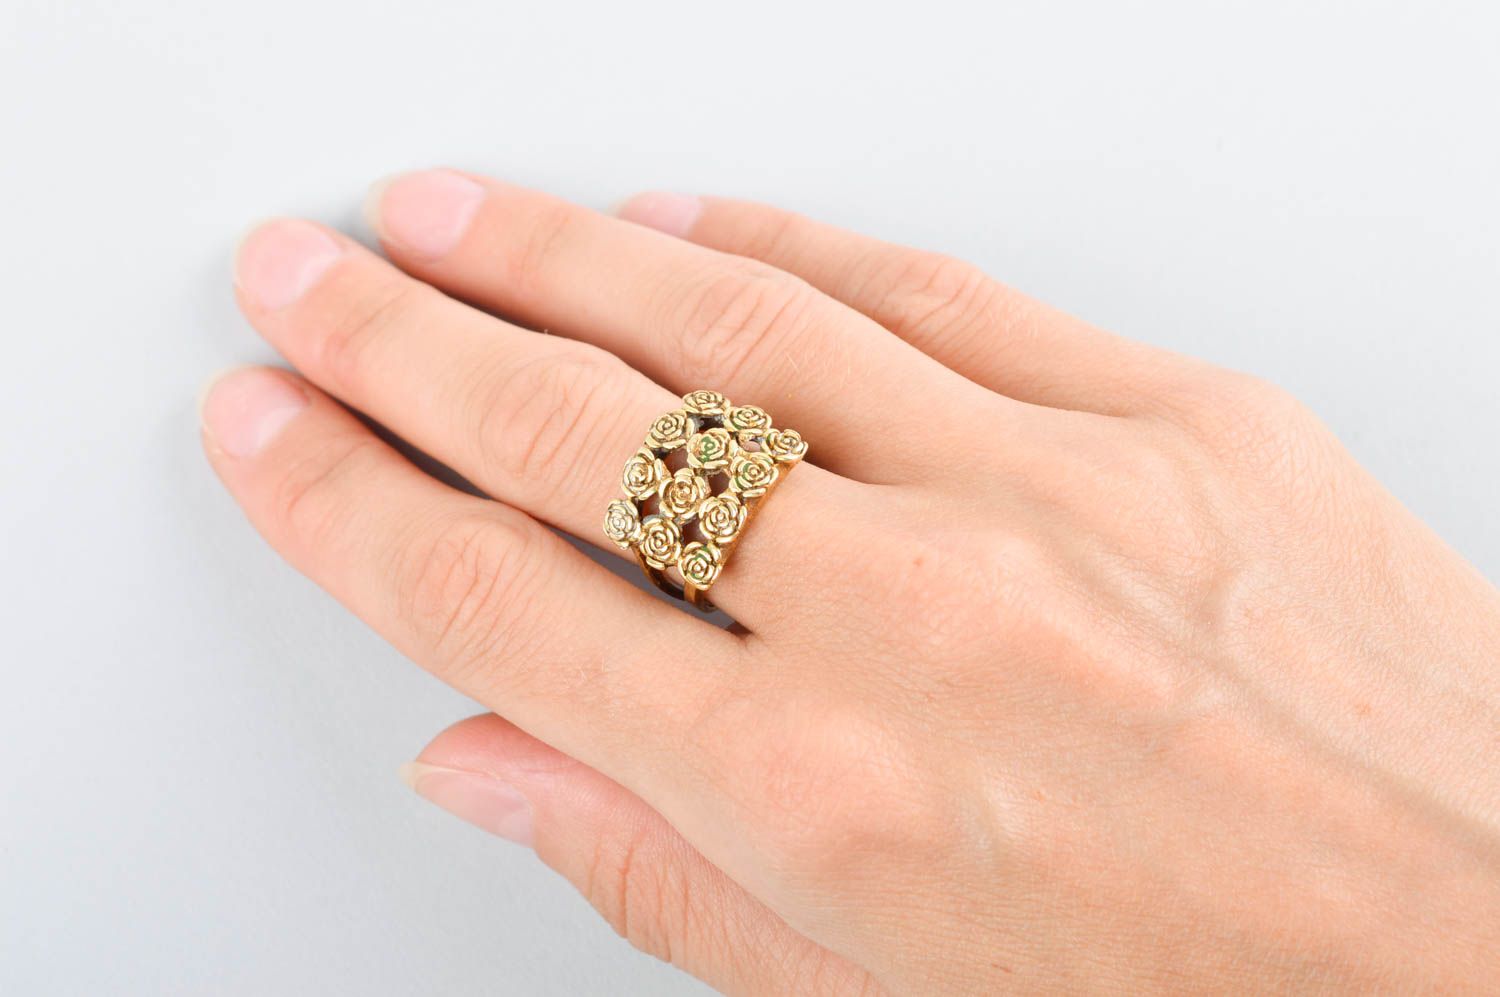 Кольцо ручной работы оригинальное украшение из металла модное кольцо с розами фото 5